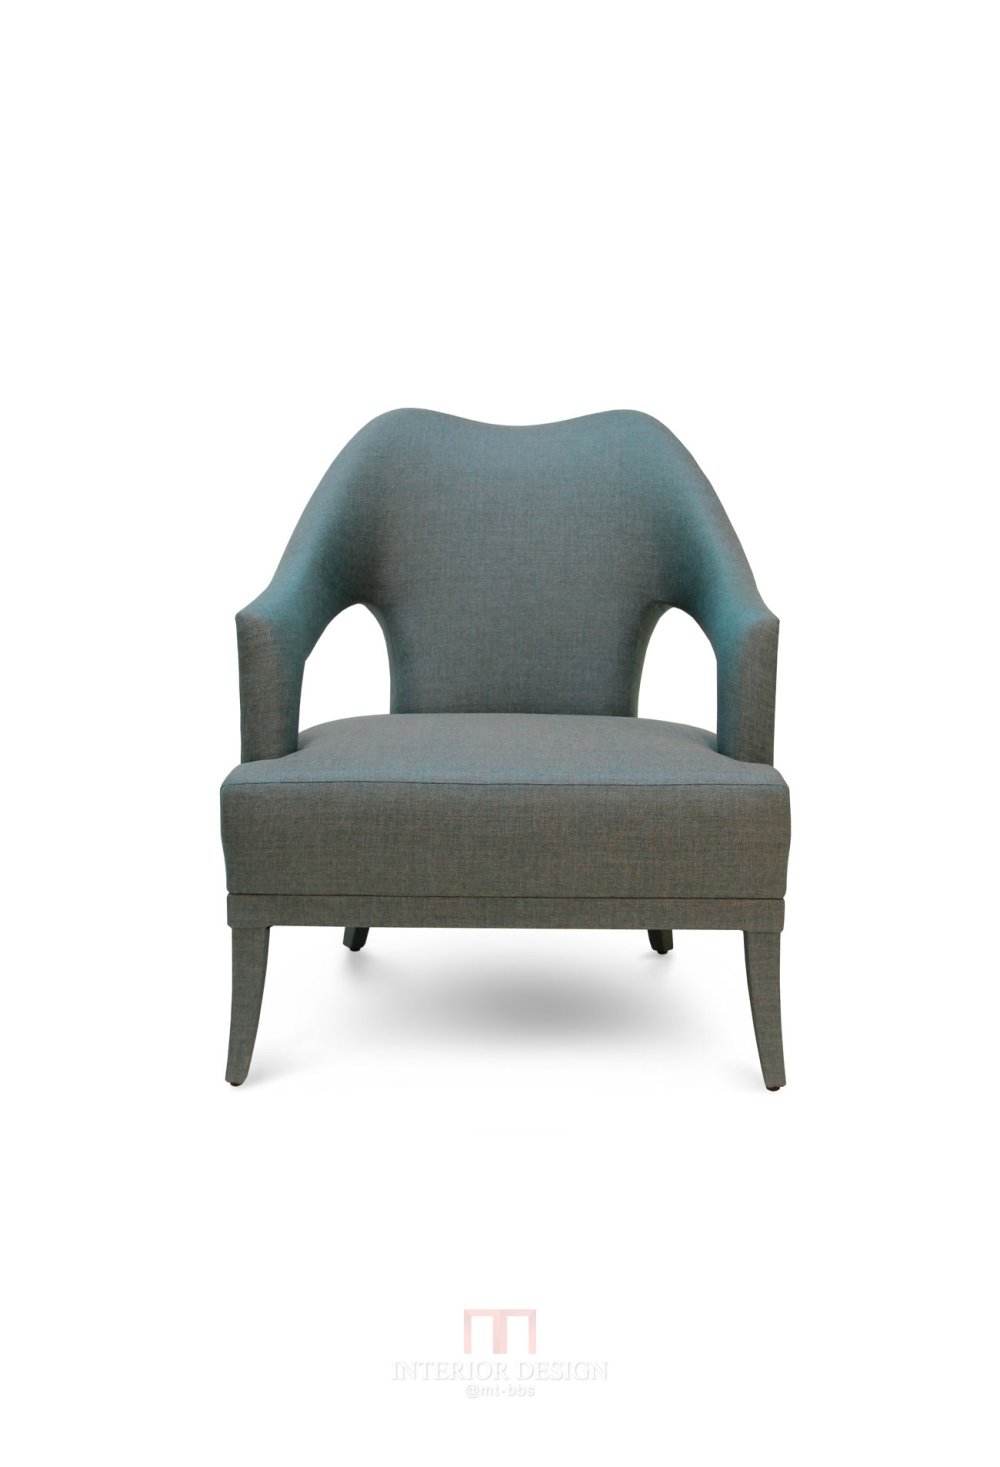 n20-armchair-zoom2.jpg